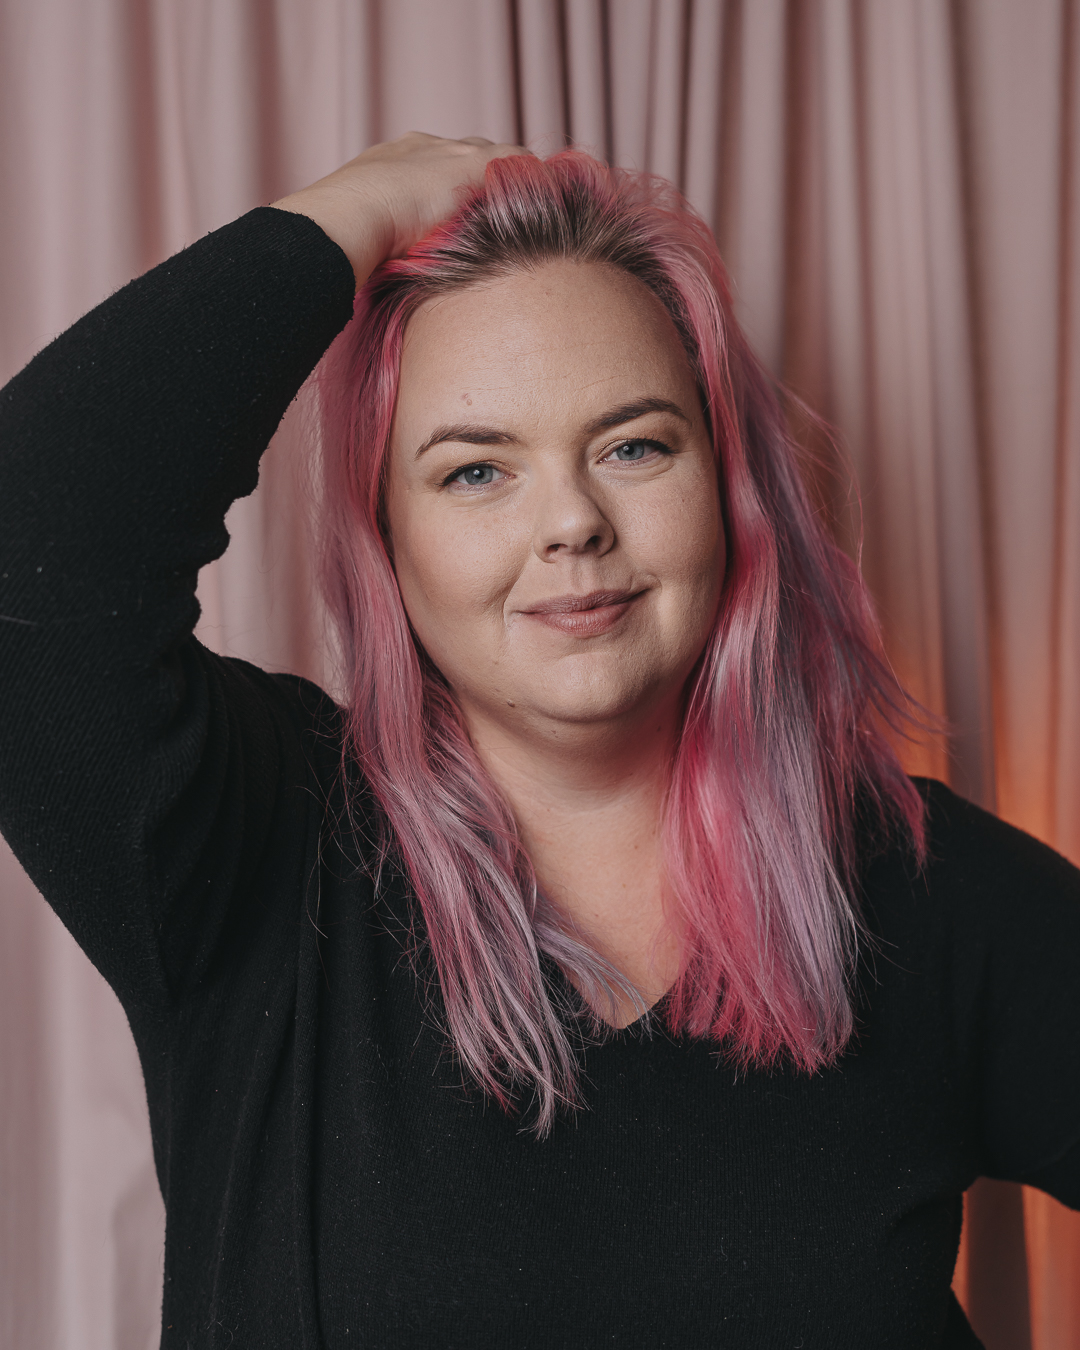 Företagsfotografering Örebro län Företagsfotograf Caroline Solberg Fotografi på Caroline taget med blixt mot en rosa bakgrund